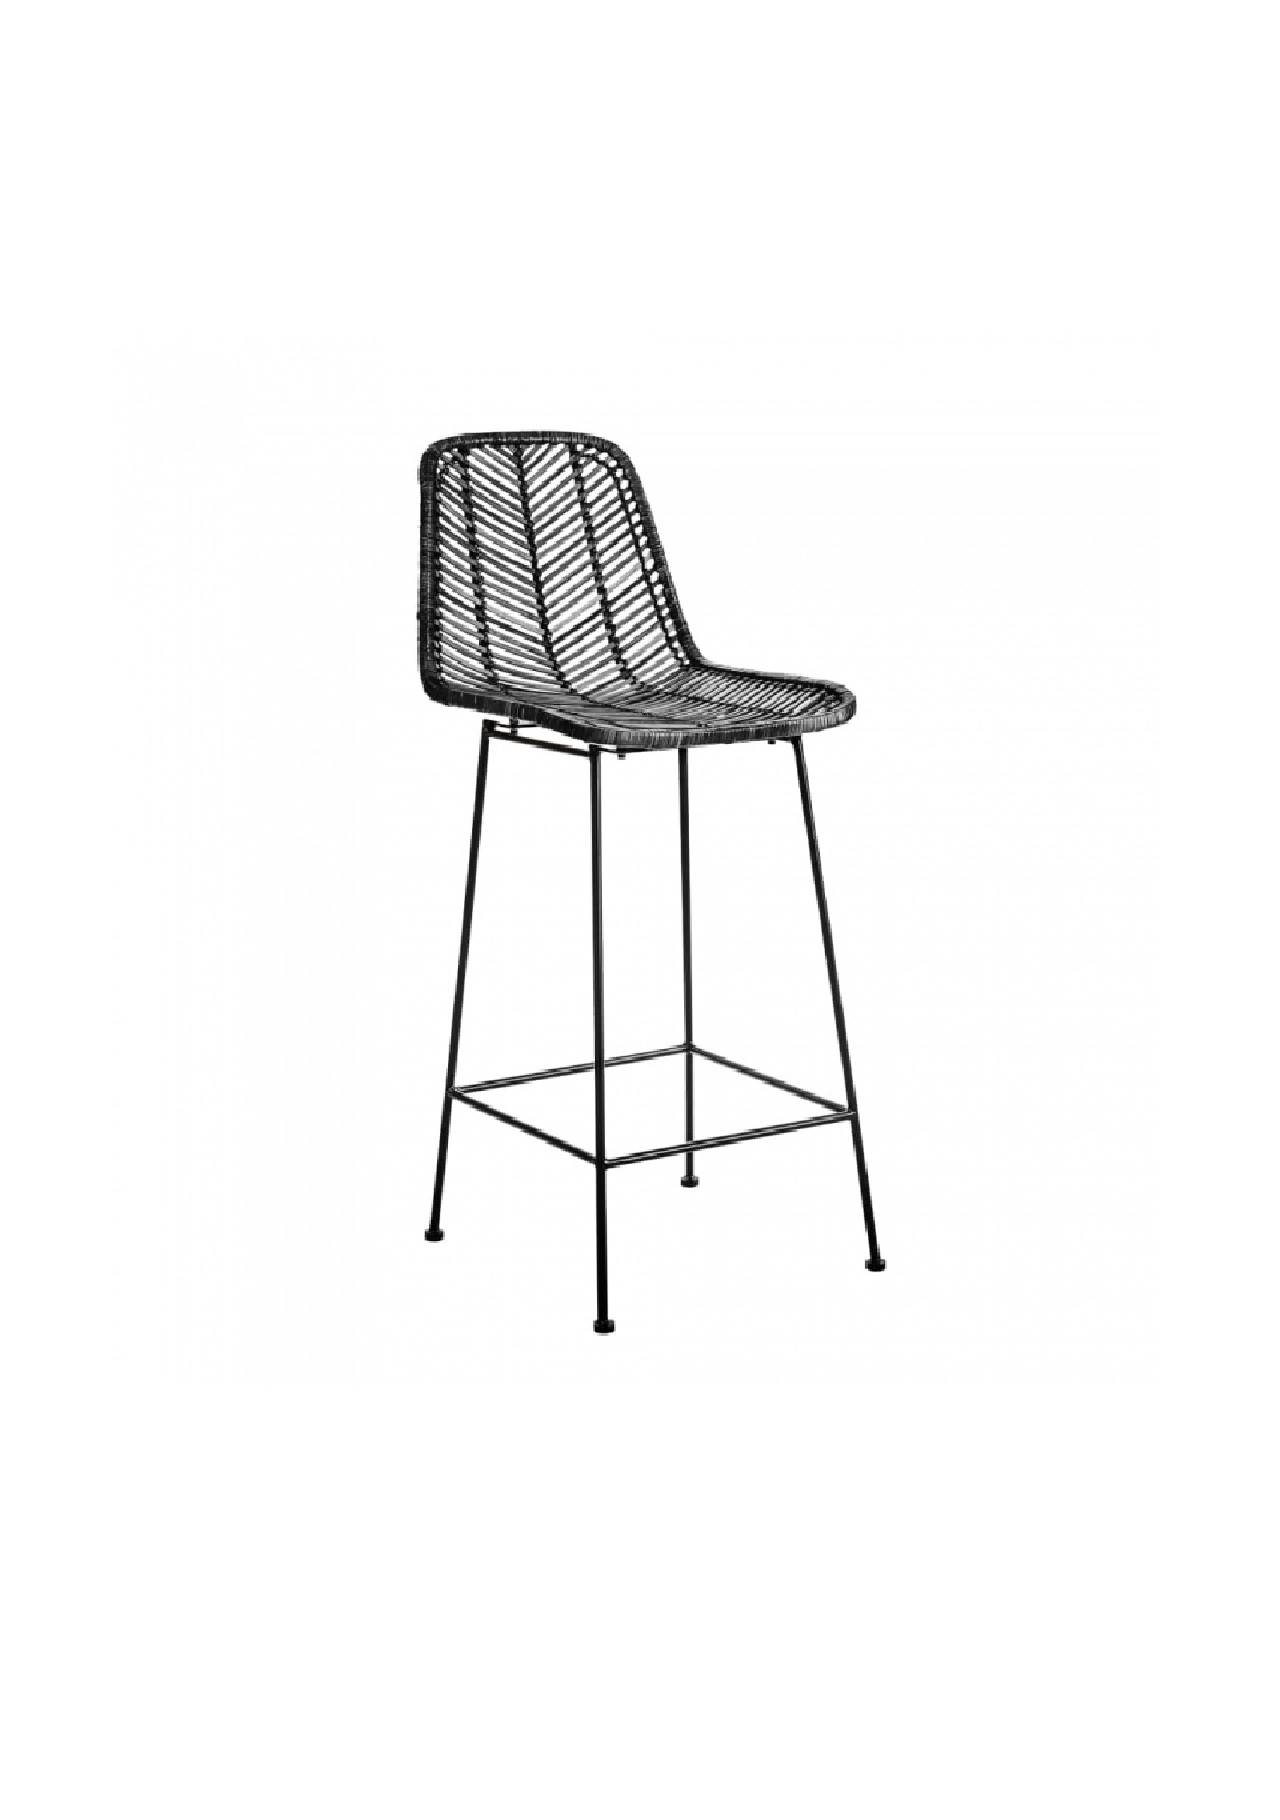 mobiliario para cocinas pequeñas silla ratan Kulunka Deco Shop, 288,99€